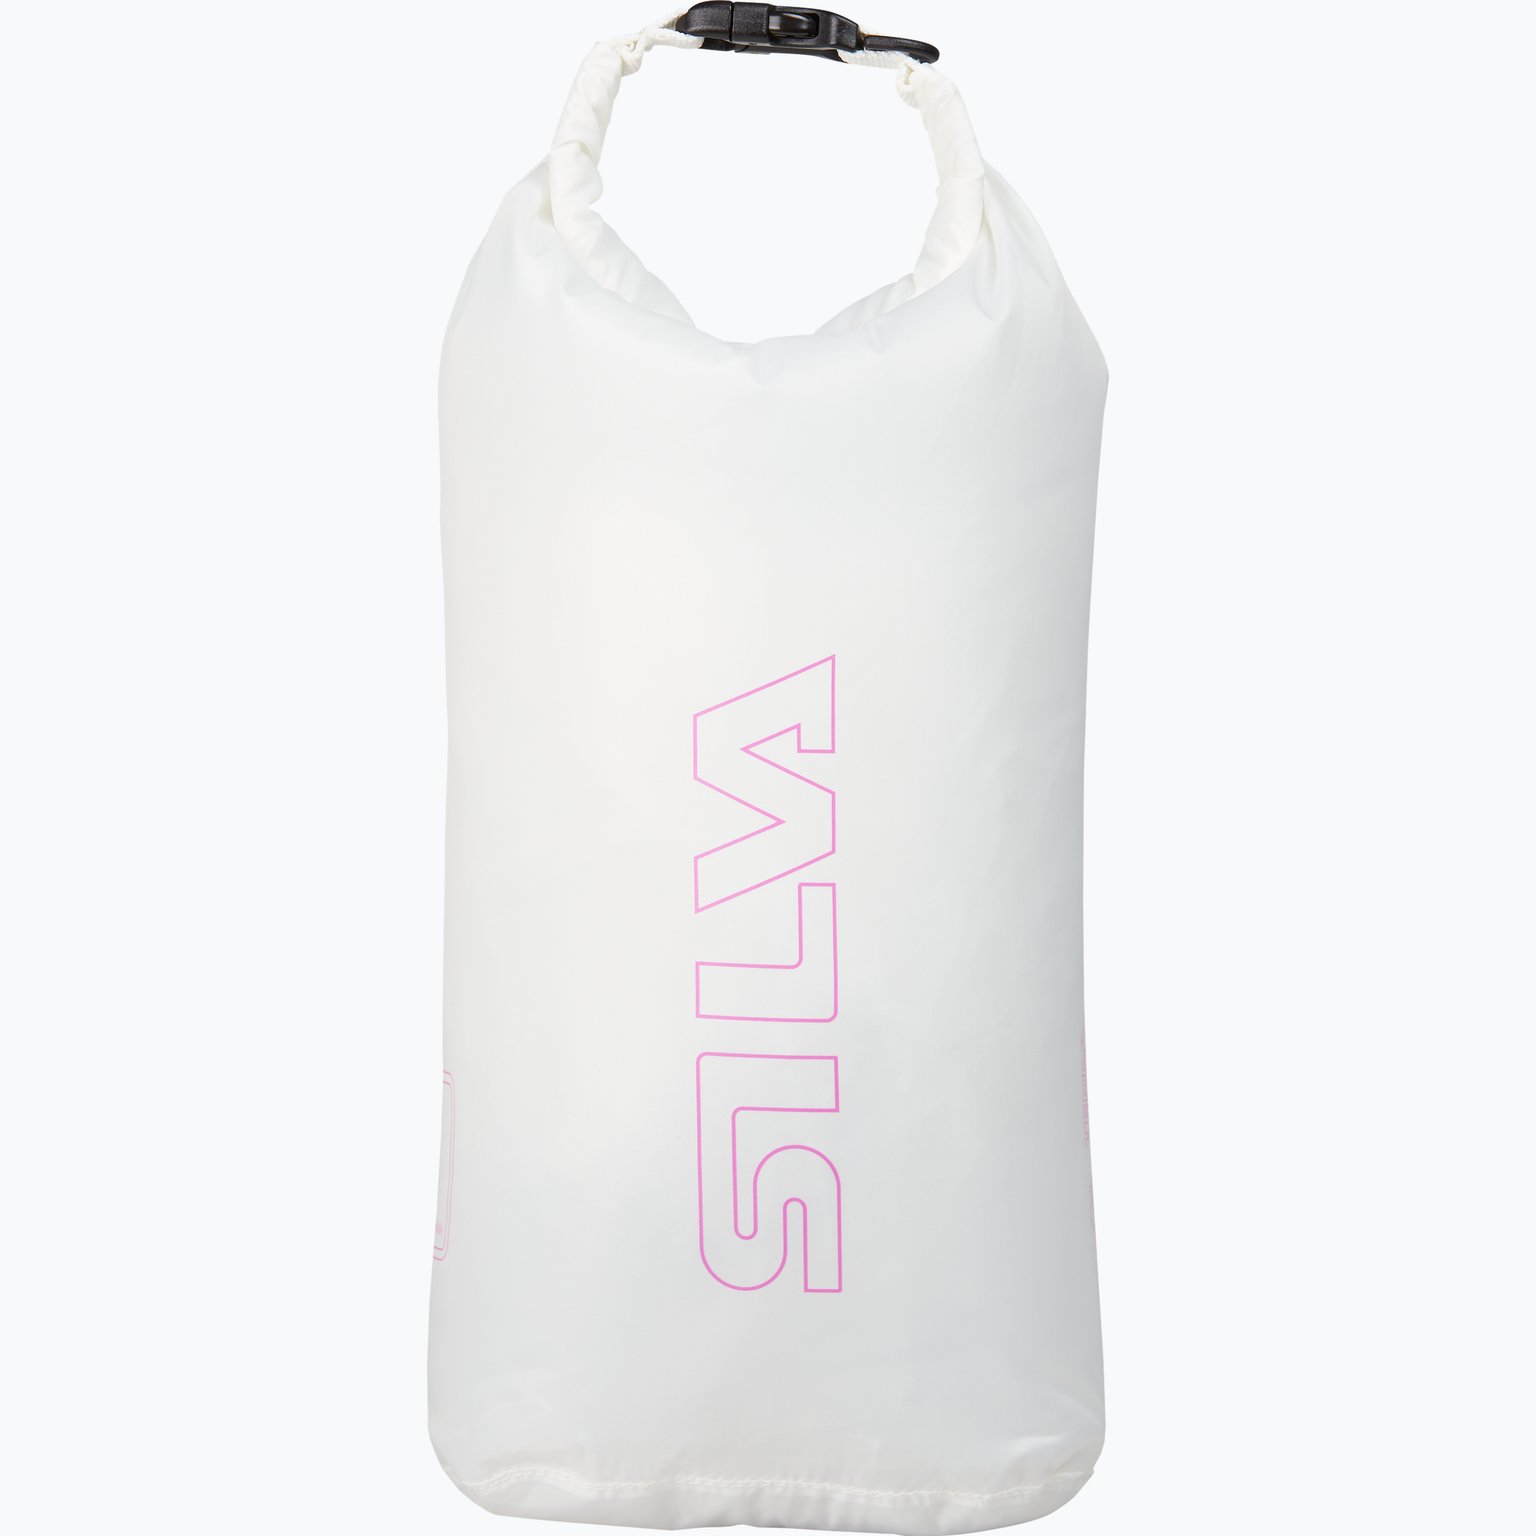 Terra Dry Bag 6L